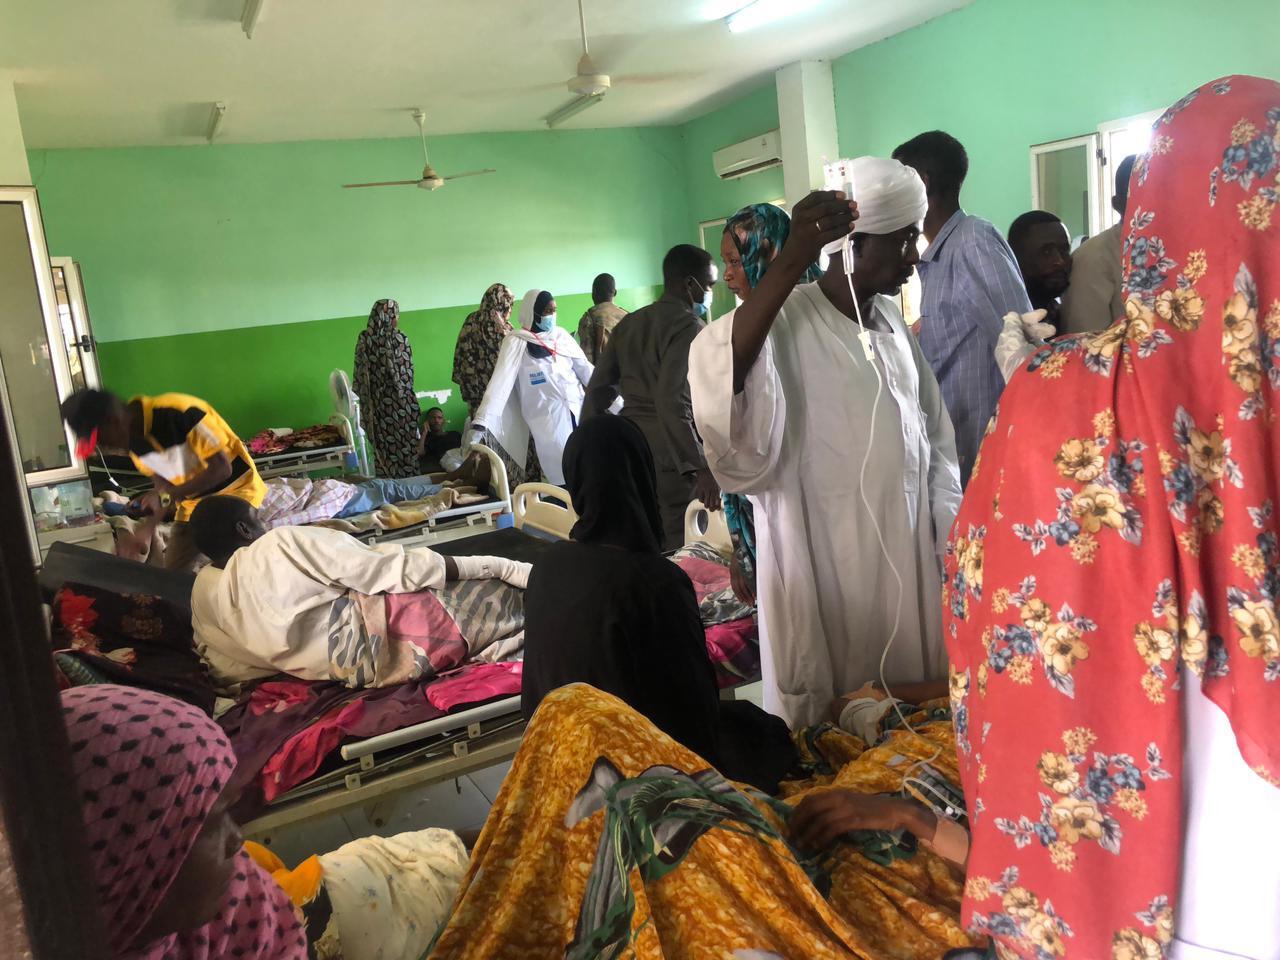 医院病人和工作人员在苏丹冲突中面临艰难处境 – 无国界医生